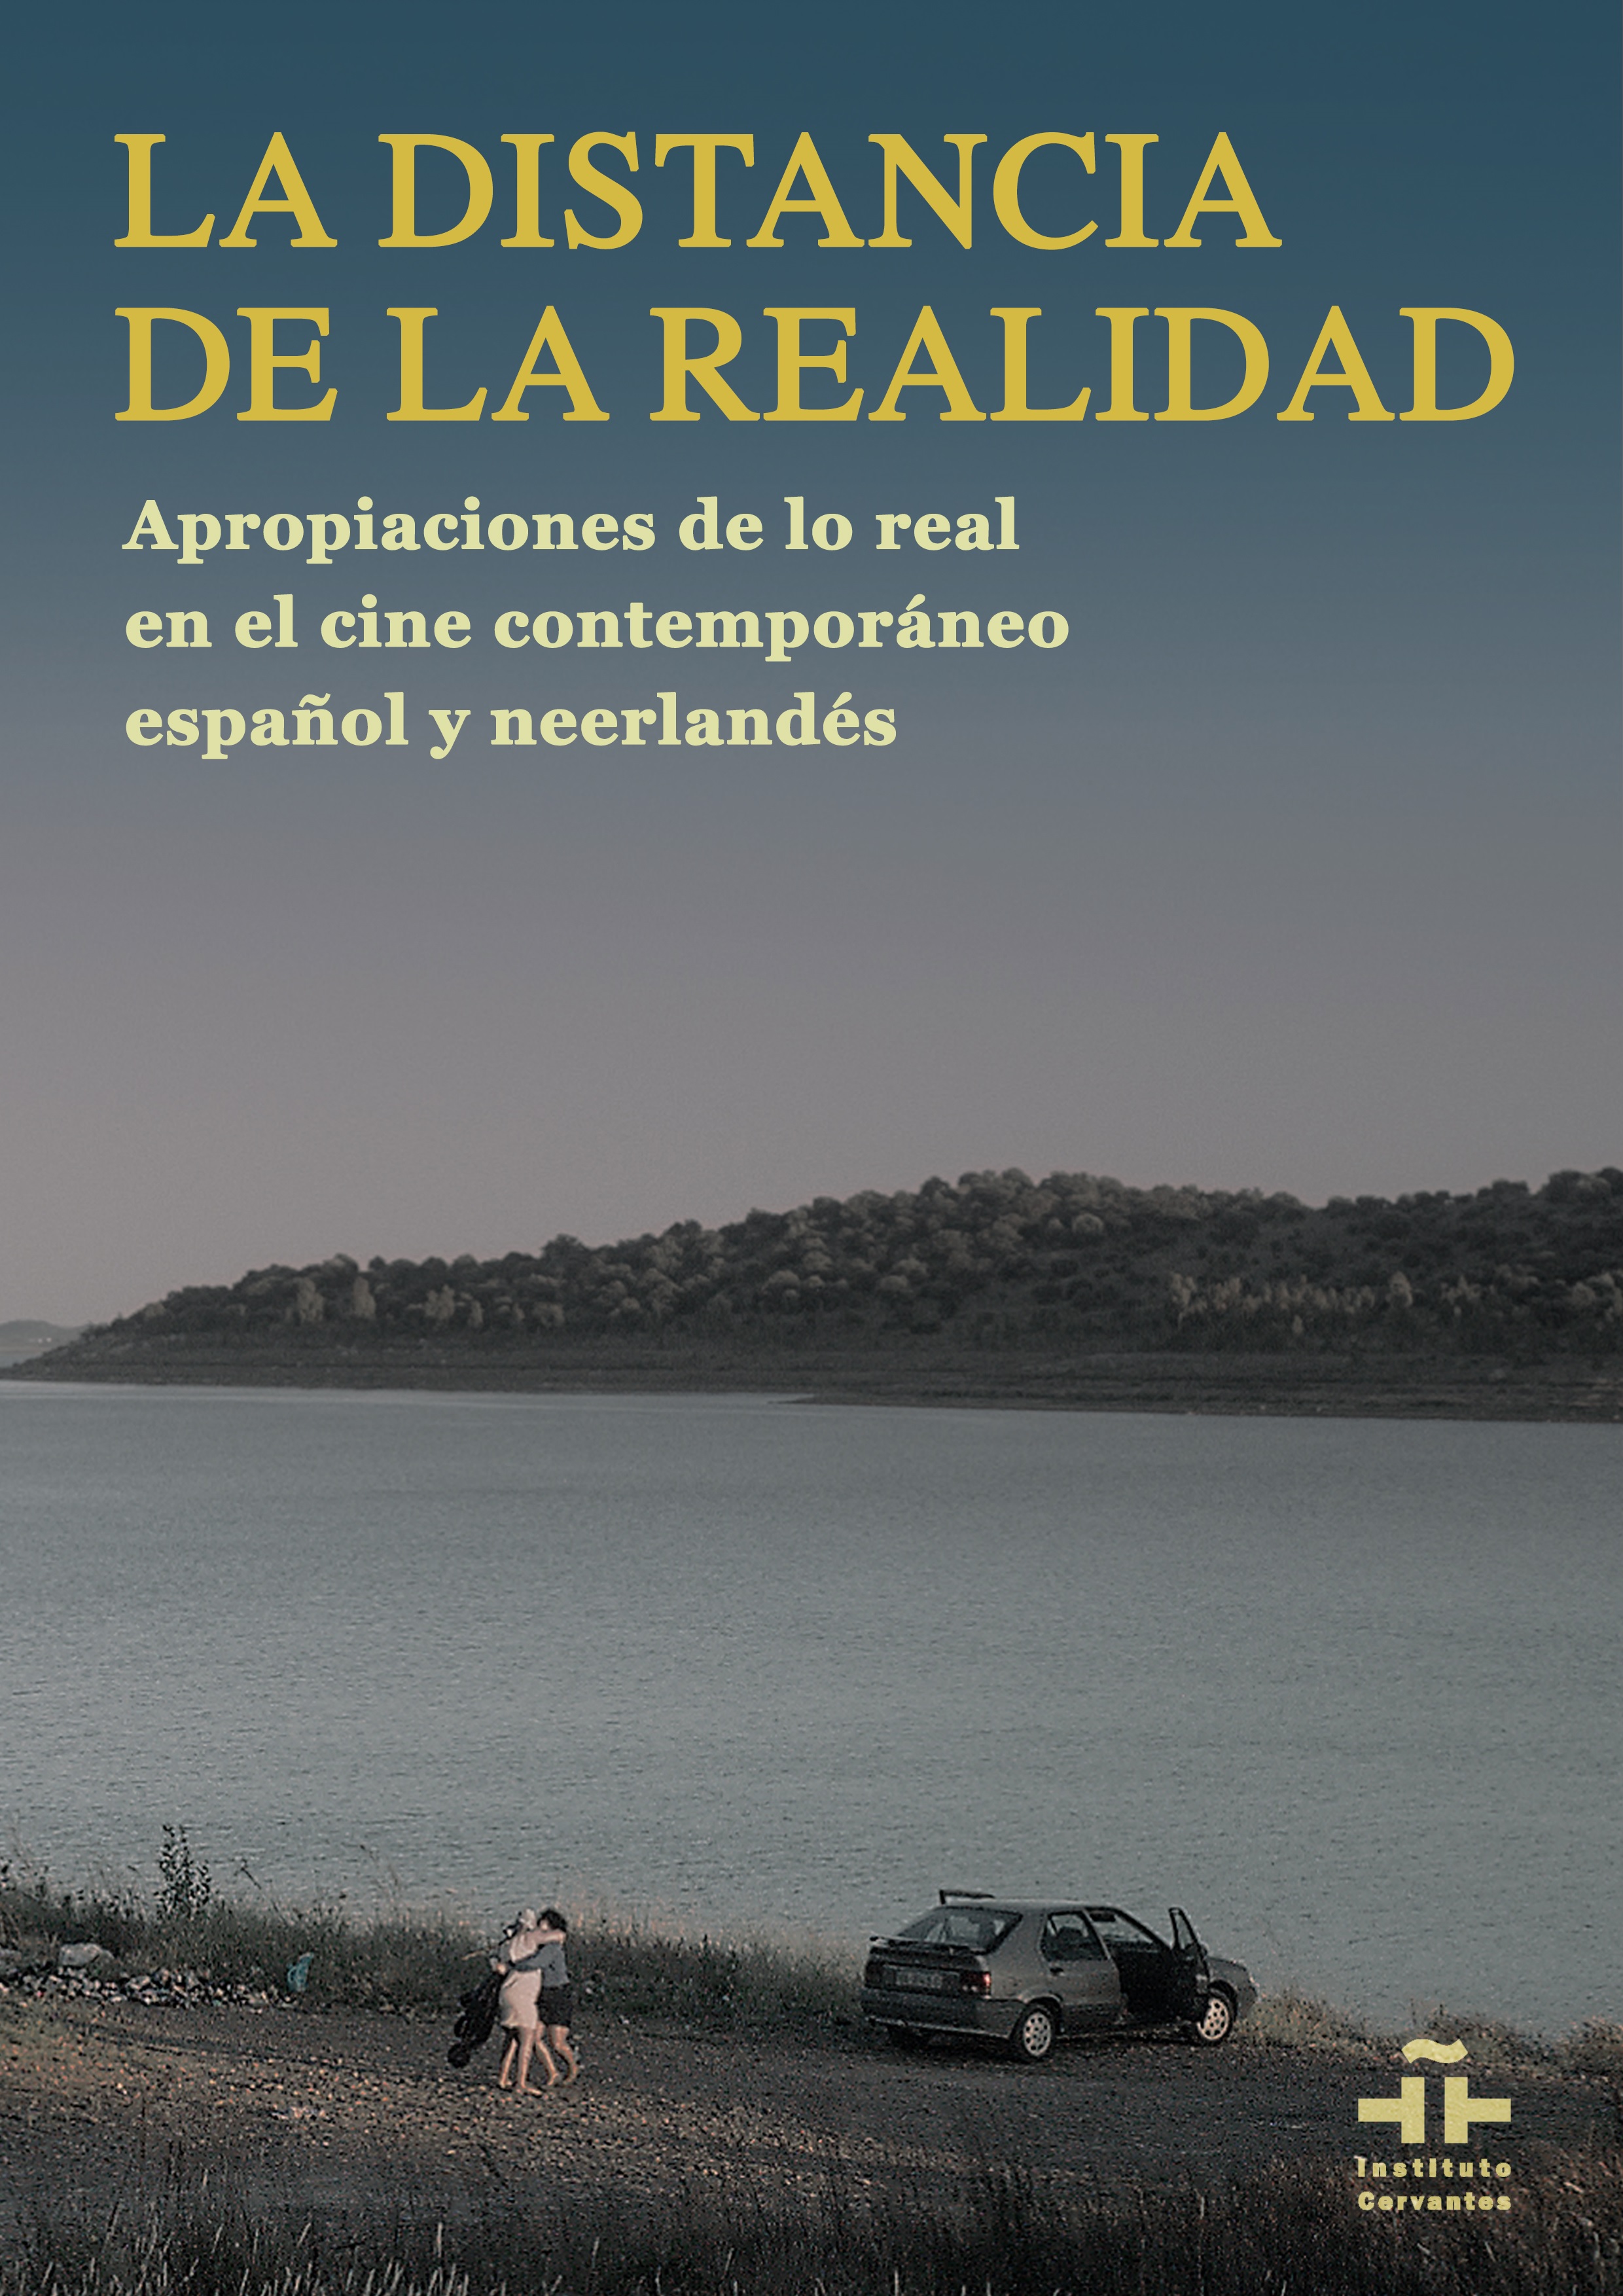 La distancia de la realidad: apropiaciones de lo real en el cine contemporáneo español y neerlandés.